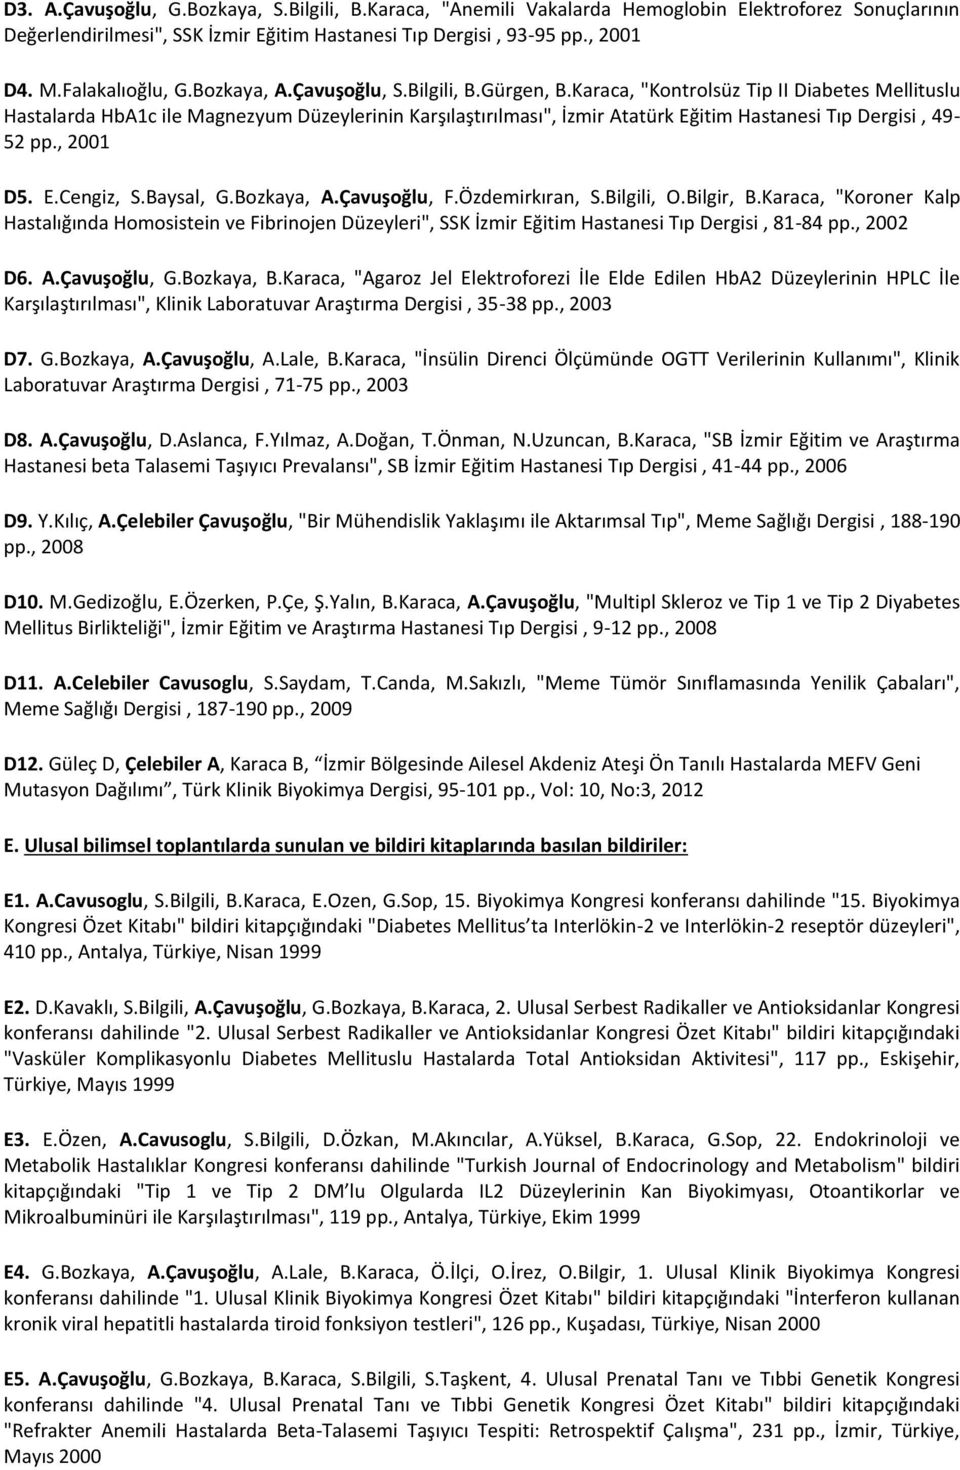 Karaca, "Kontrolsüz Tip II Diabetes Mellituslu Hastalarda HbA1c ile Magnezyum Düzeylerinin Karşılaştırılması", İzmir Atatürk Eğitim Hastanesi Tıp Dergisi, 49-52 pp., 2001 D5. E.Cengiz, S.Baysal, G.